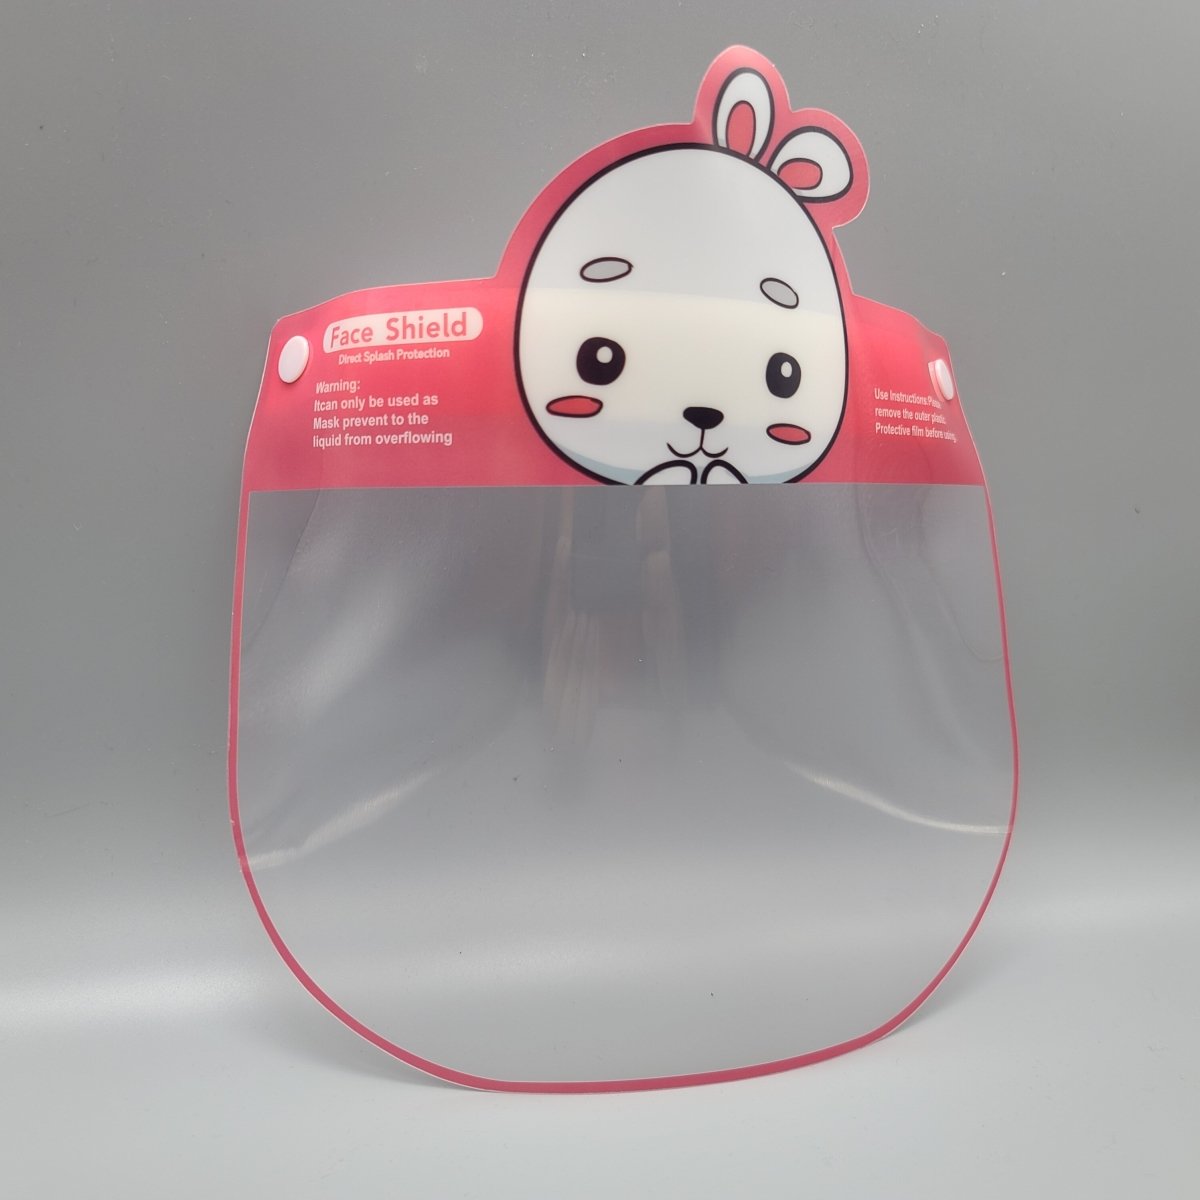 Mascaras Plasticas - Cubre Cara Plastico - Face Shield - Adultos y Niños